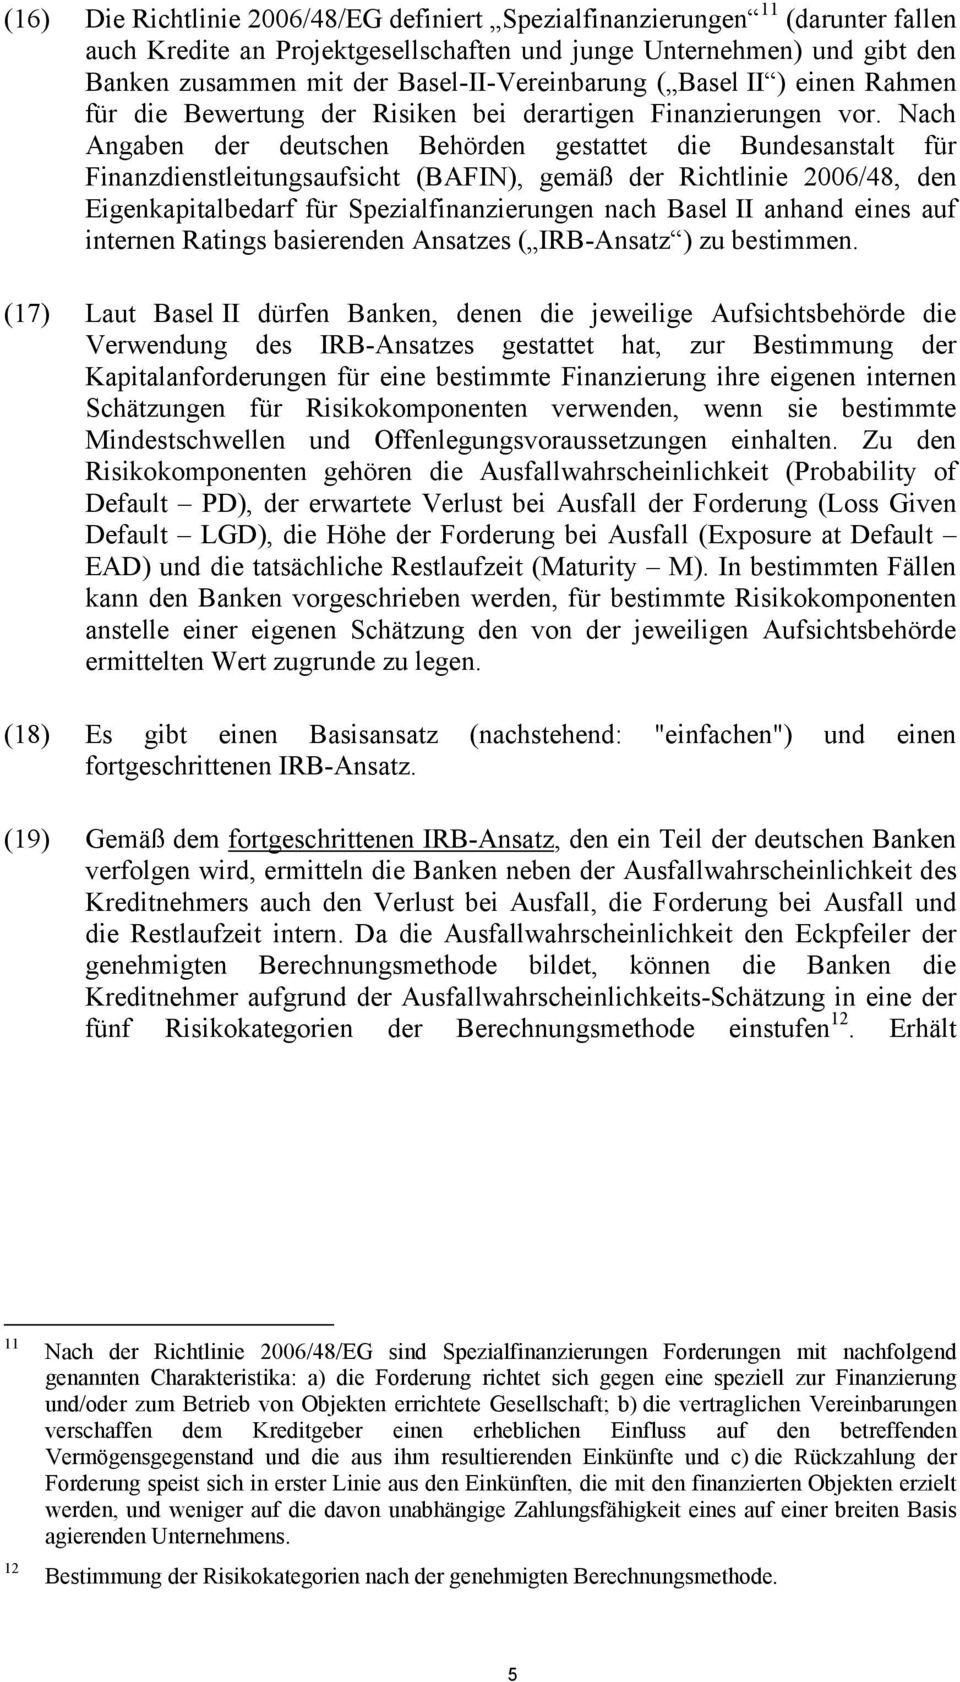 Nach Angaben der deutschen Behörden gestattet die Bundesanstalt für Finanzdienstleitungsaufsicht (BAFIN), gemäß der Richtlinie 2006/48, den Eigenkapitalbedarf für Spezialfinanzierungen nach Basel II